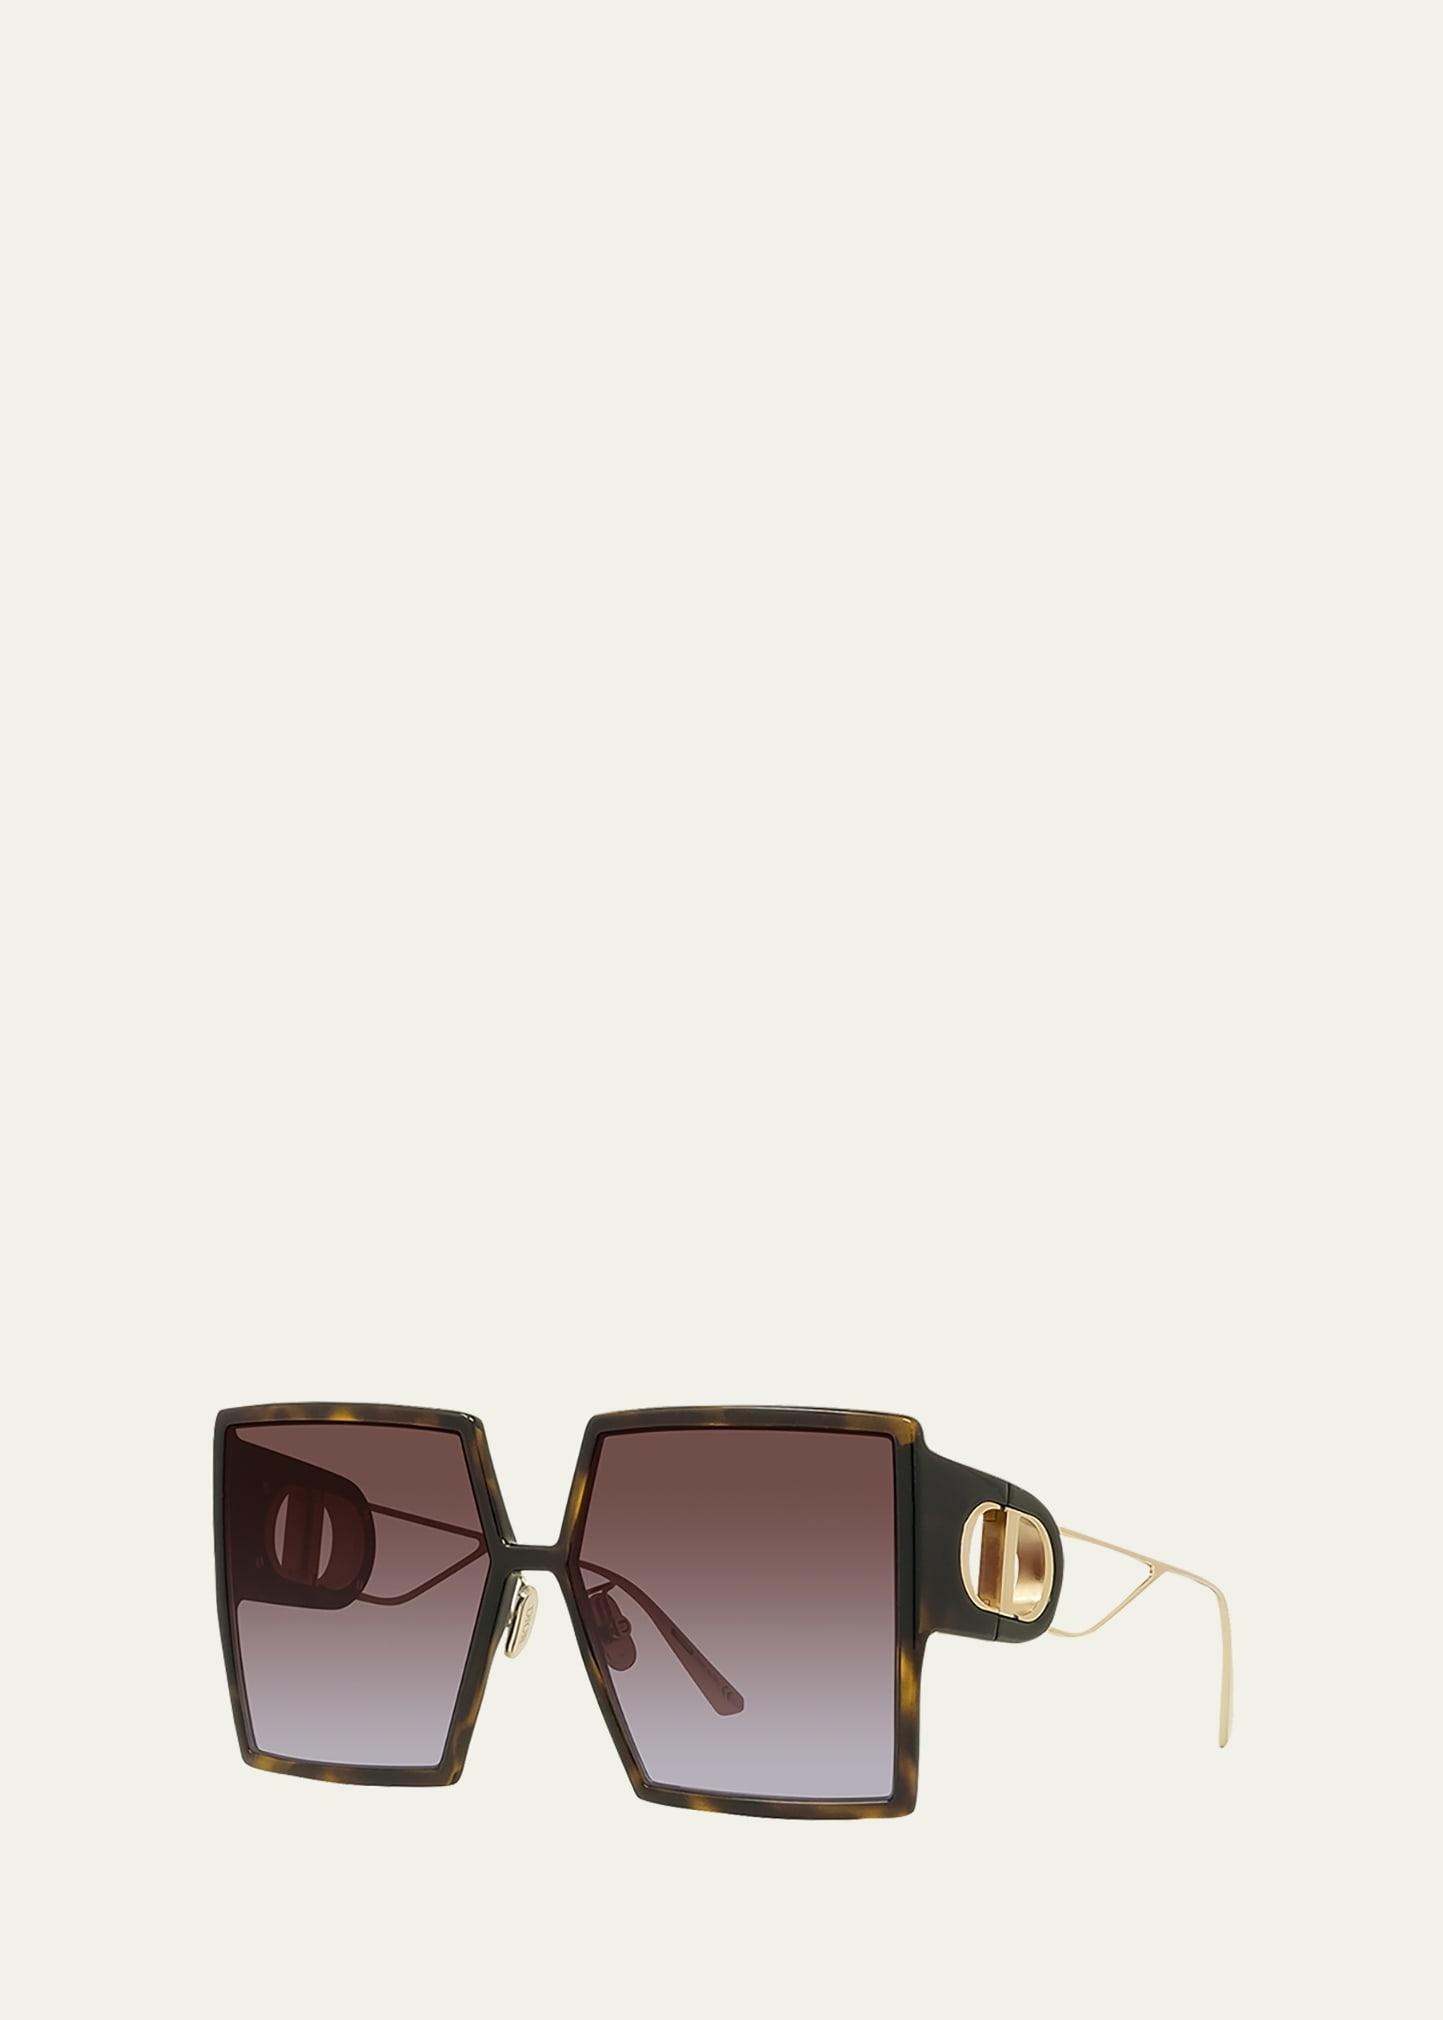 DIOR 30Montaigne SU 58mm Square Sunglasses Product Image